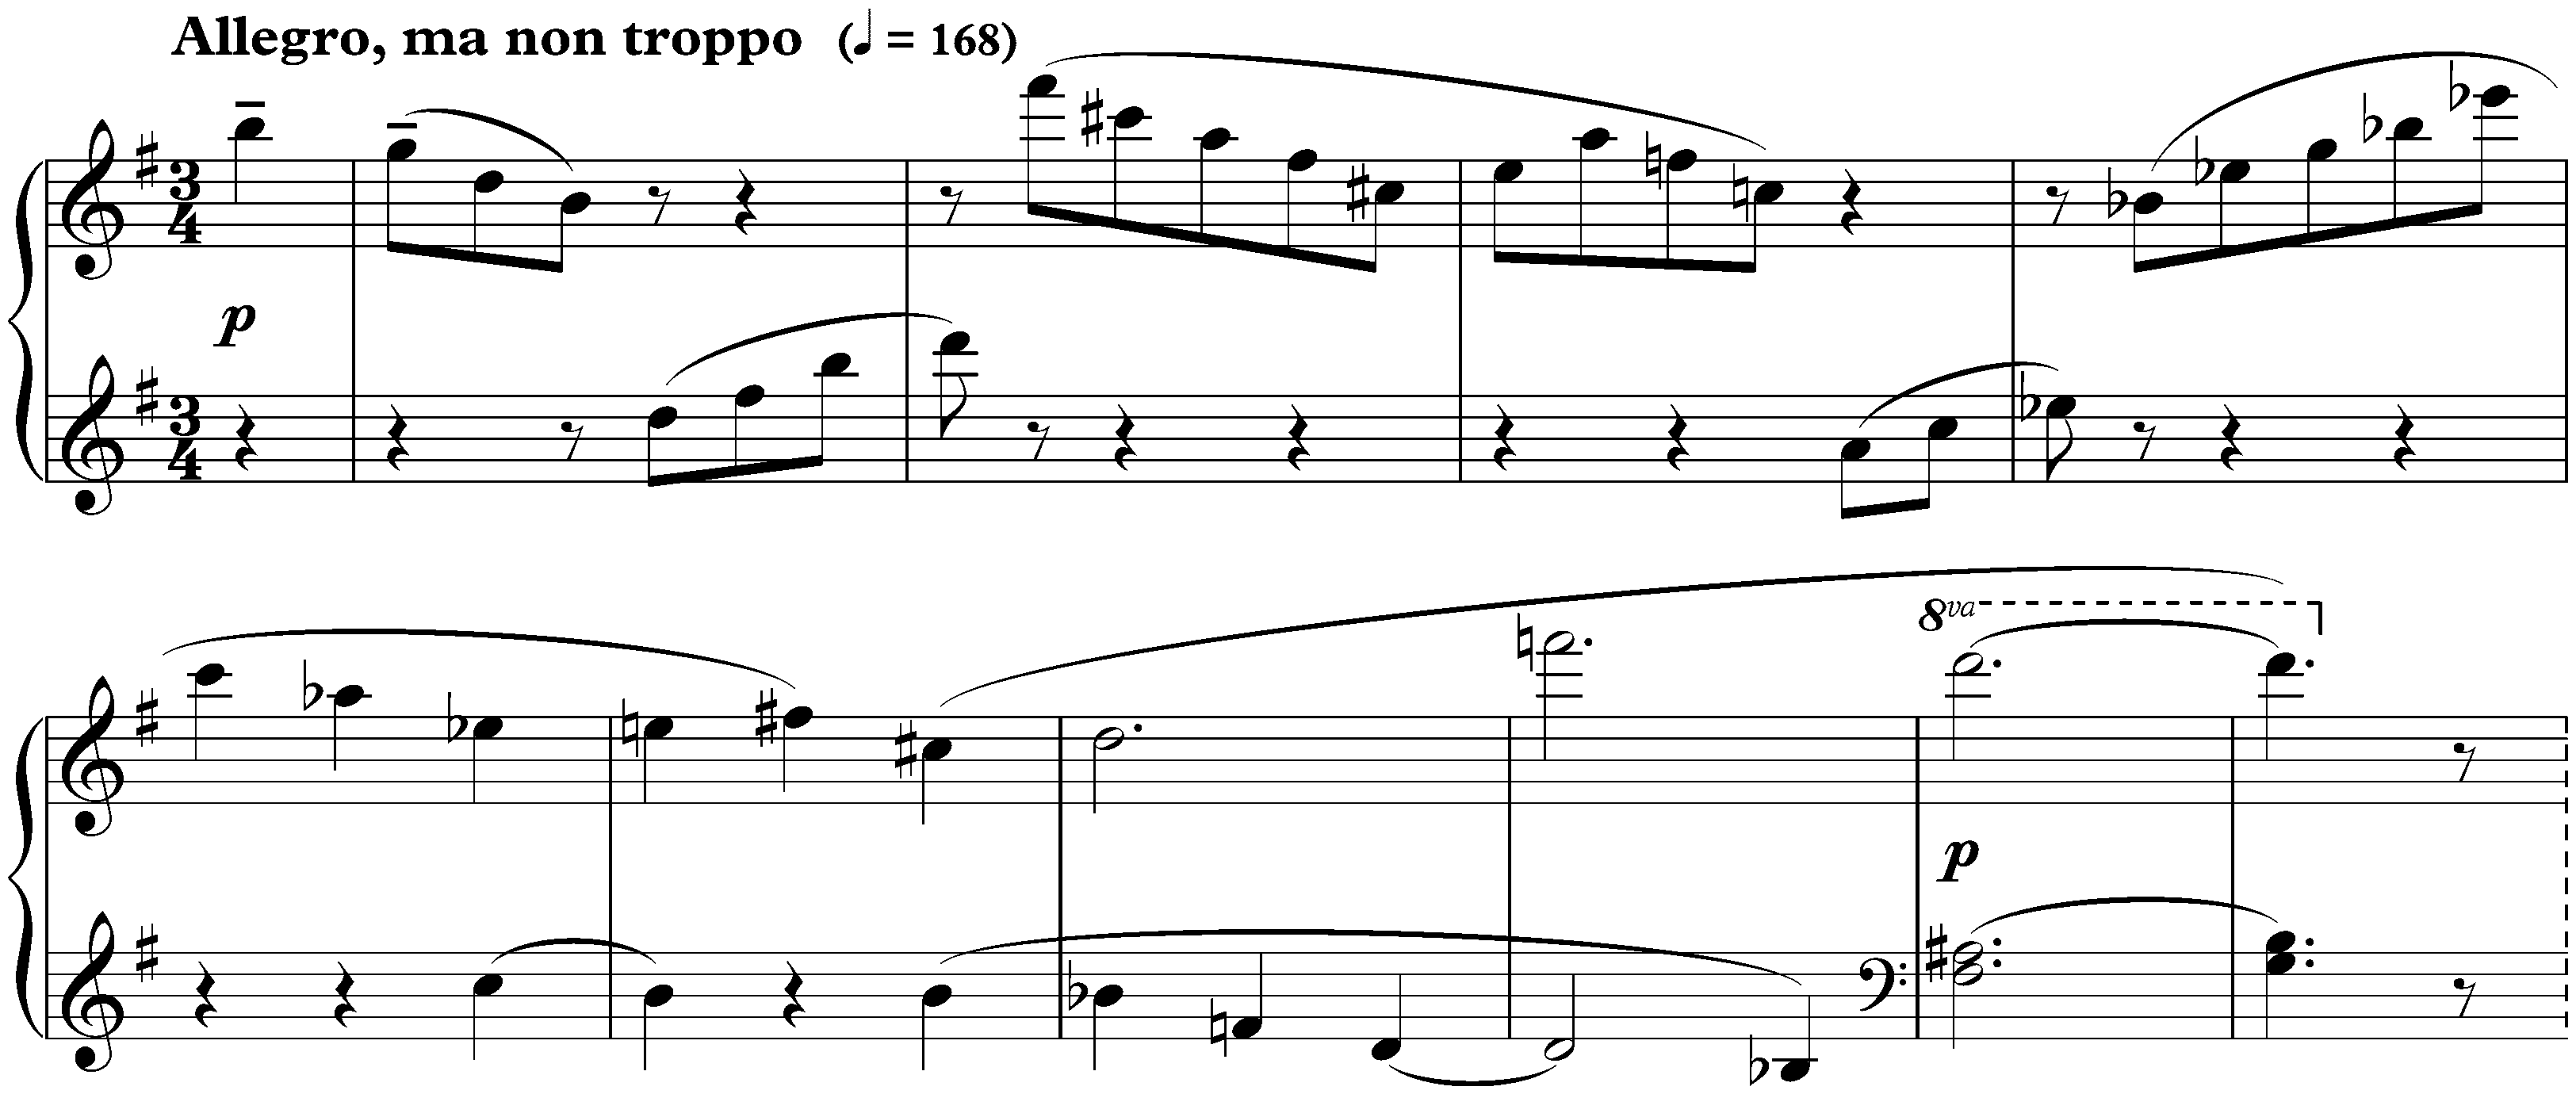 Sonatina in G major, op. 54 no. 2; 3. Allegro, ma non troppo